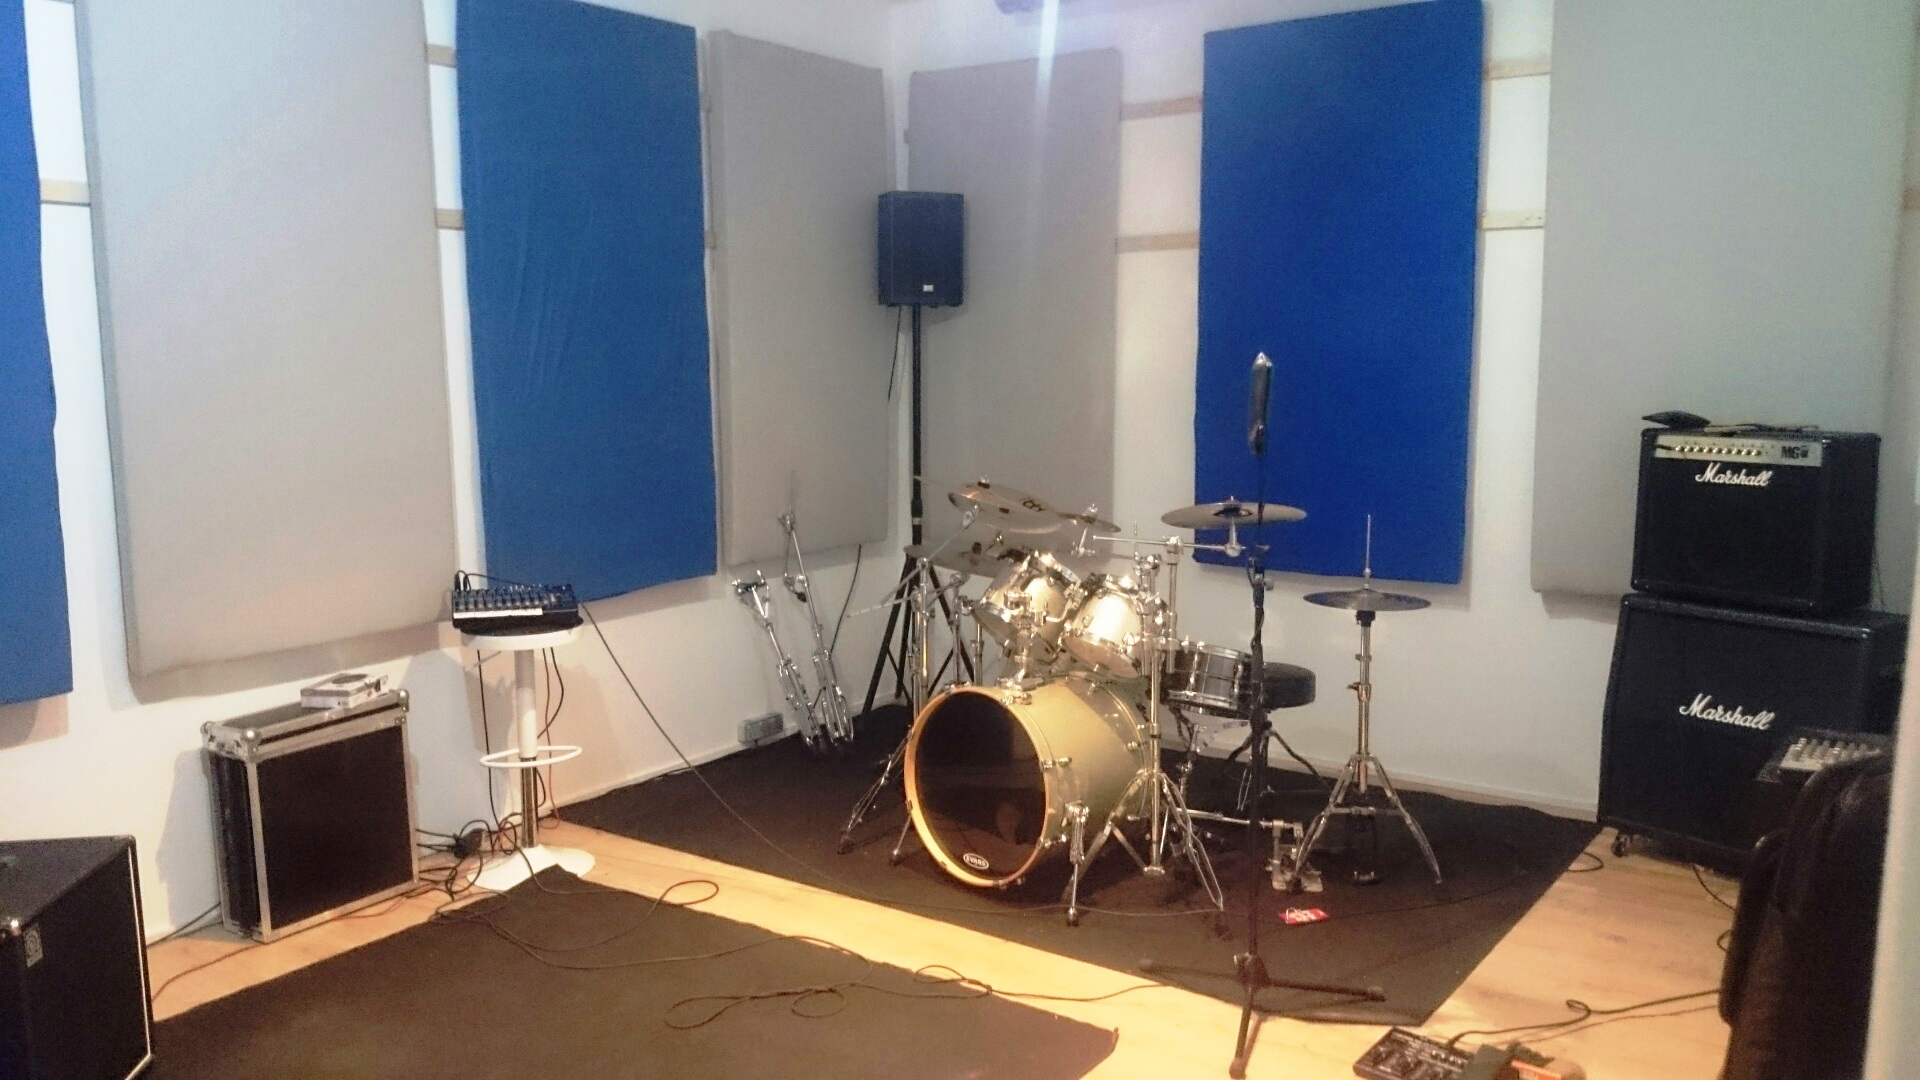 Studio 58